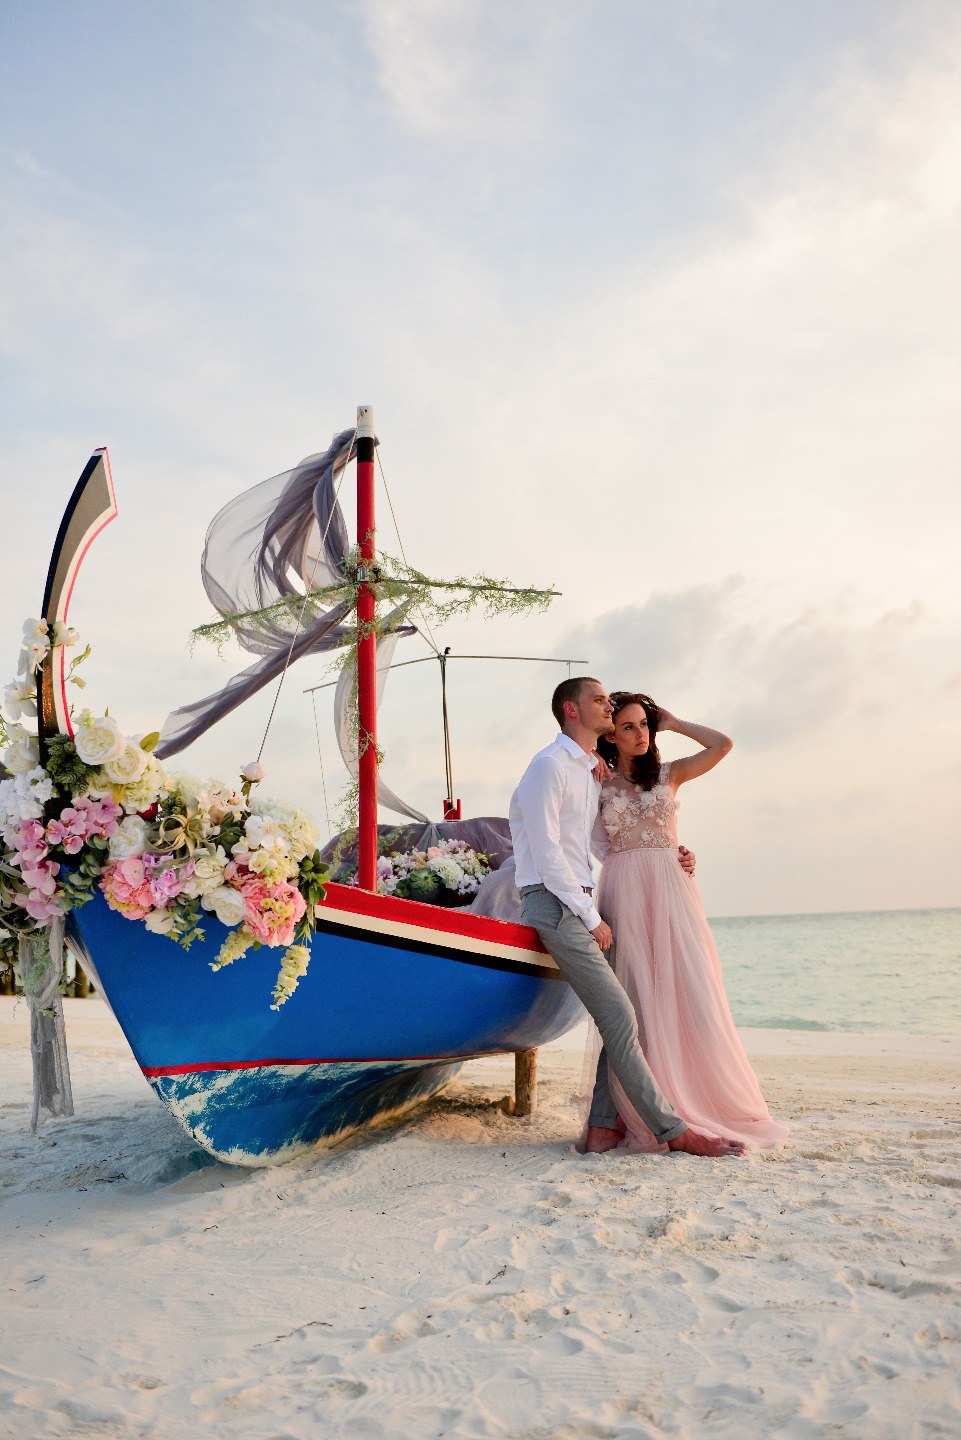 Любовь на необитаемом острове: love-story на Мальдивах